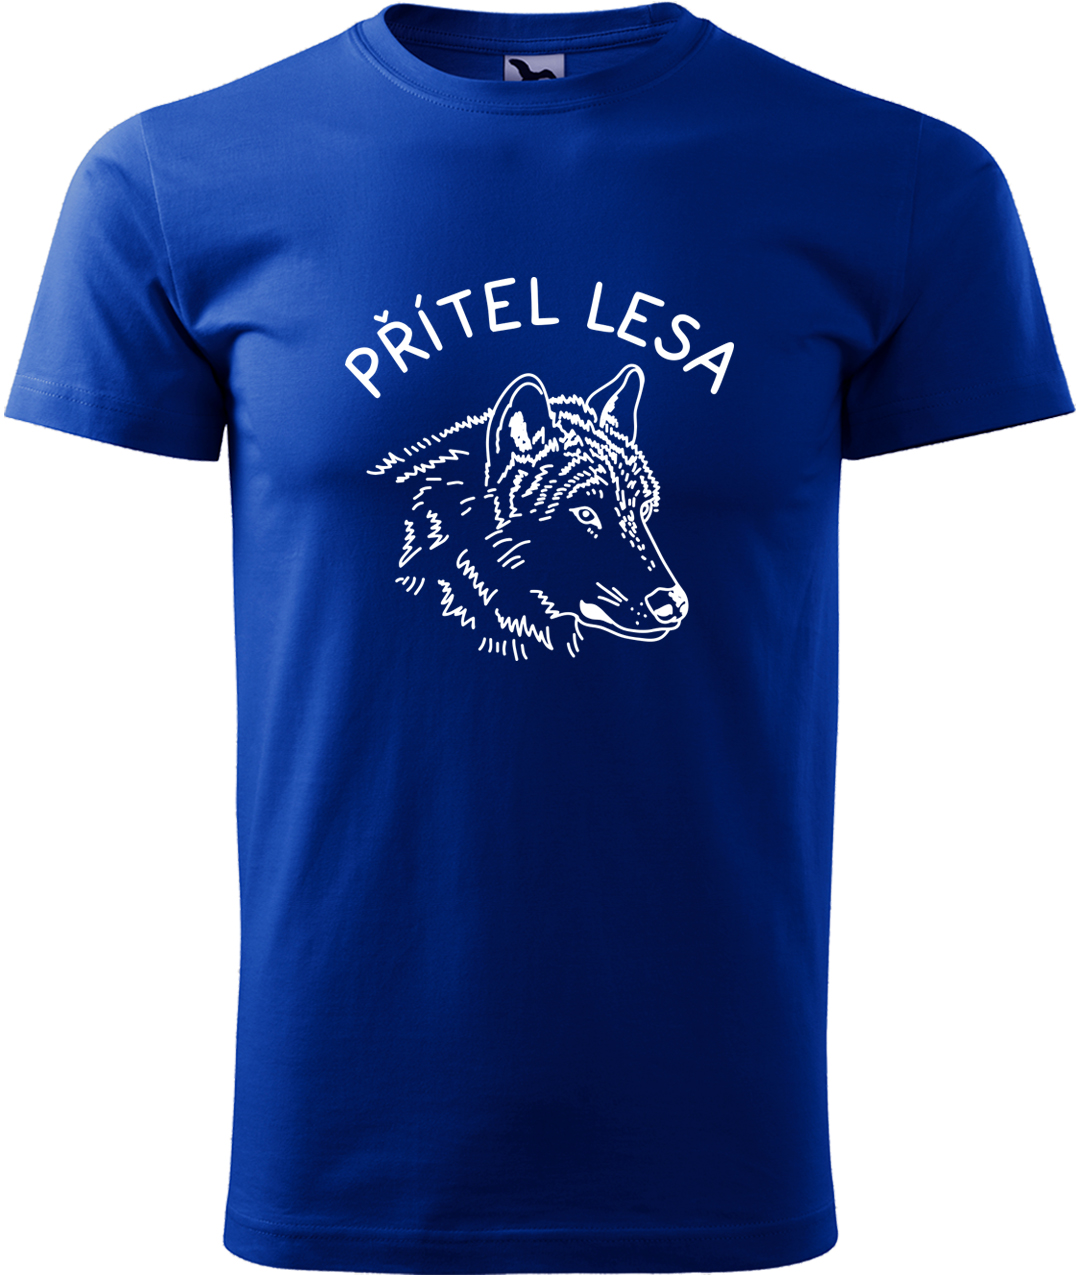 Pánské tričko s vlkem - Přítel lesa Velikost: L, Barva: Královská modrá (05), Střih: pánský